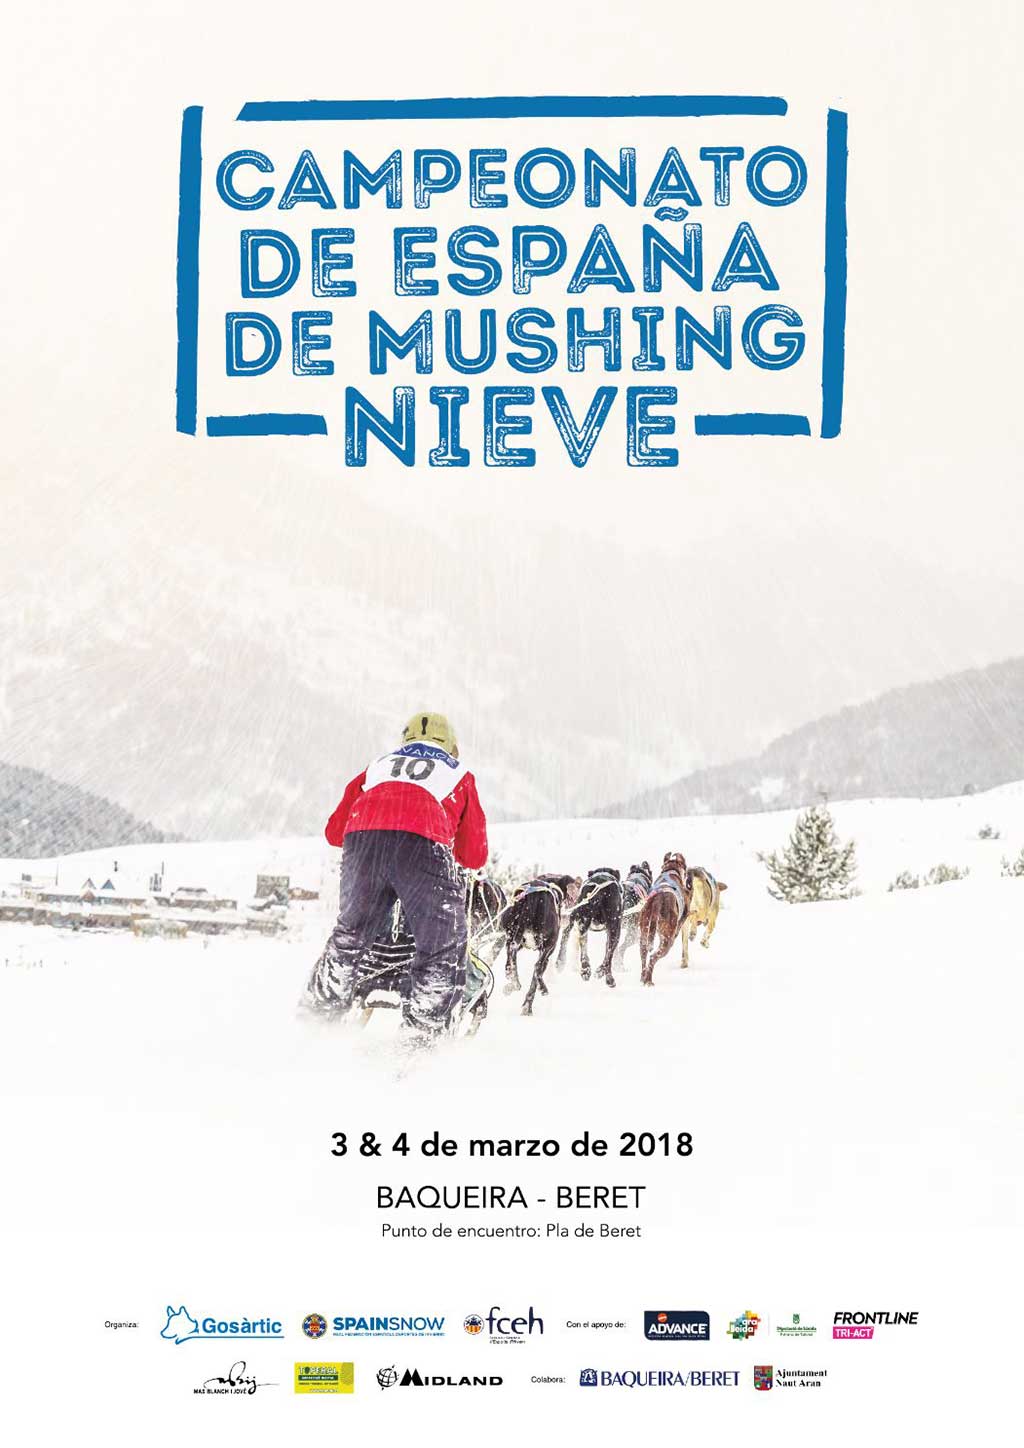 Campeonato de España de Mushing Nieve en Baqueira Beret.